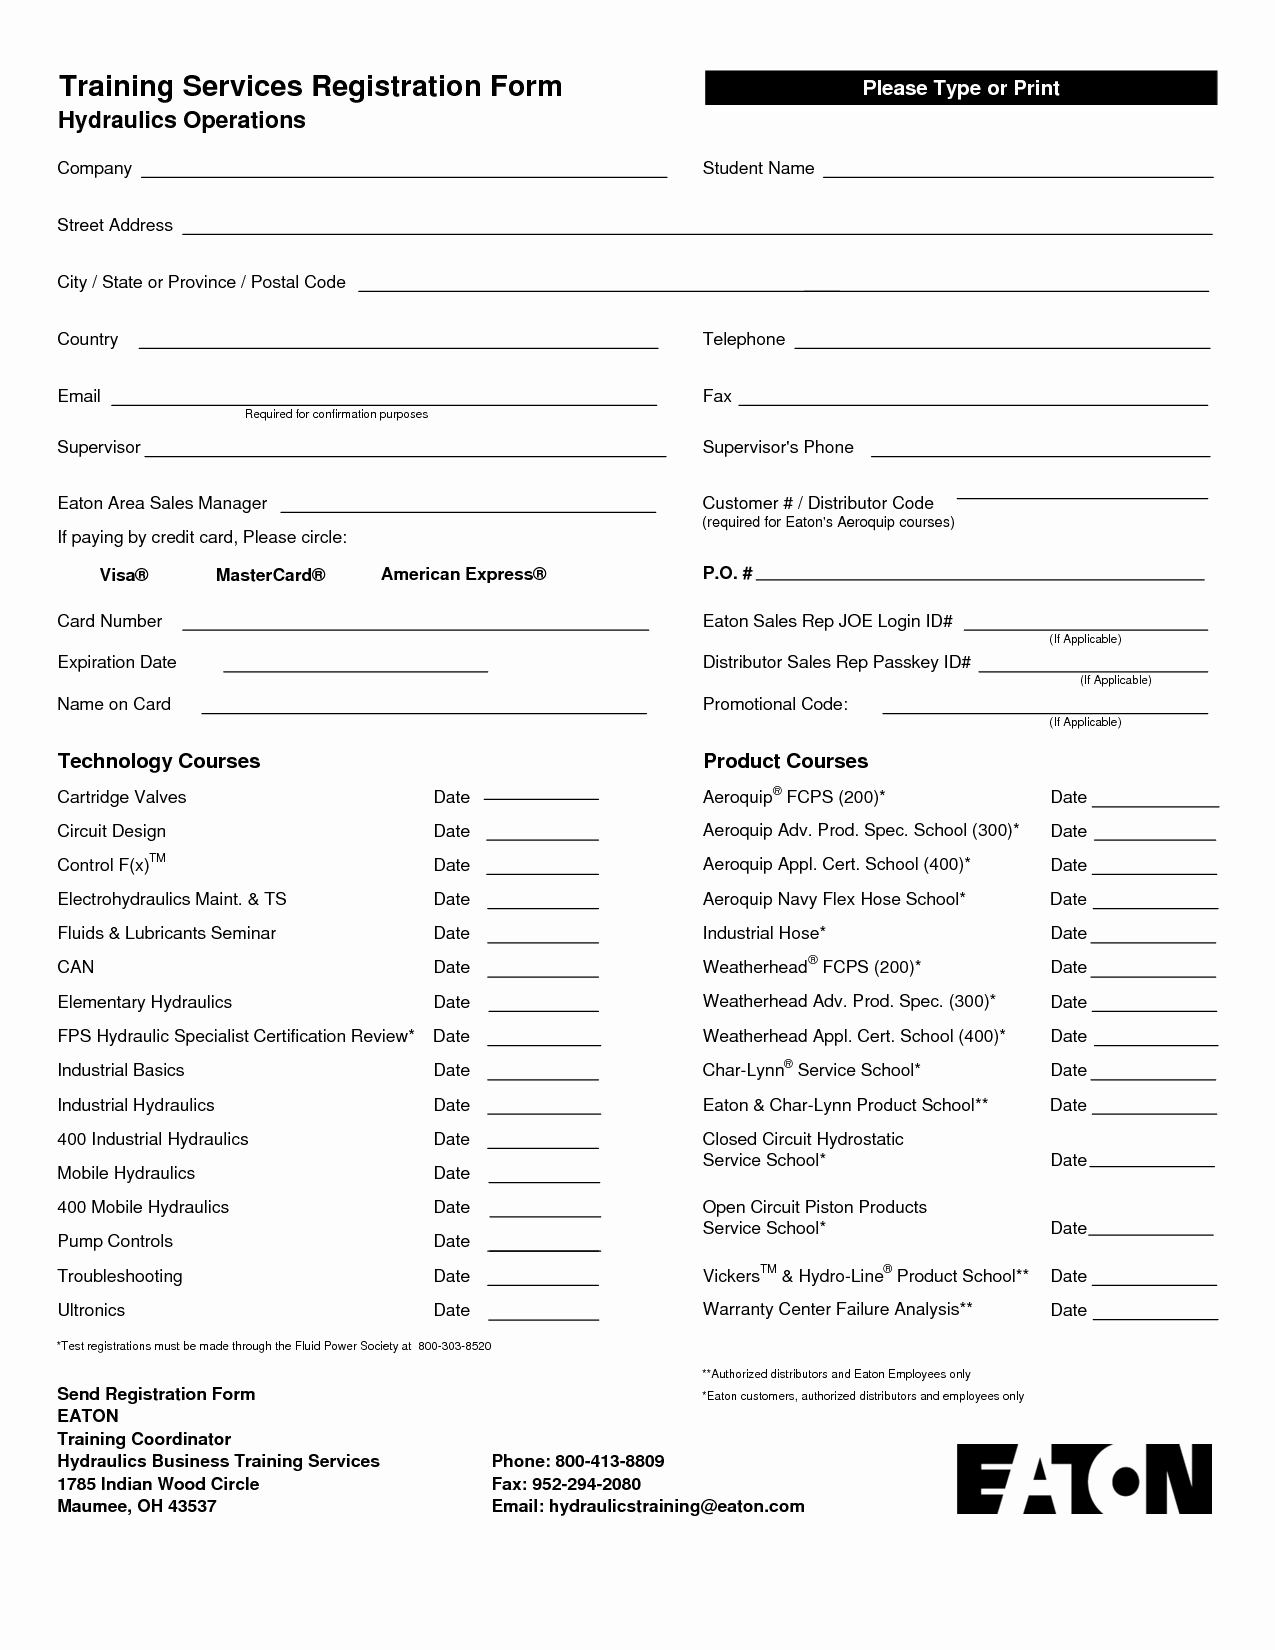 Conference Registration forms Template Elegant Seminar Registration form Template Word Free Picture event